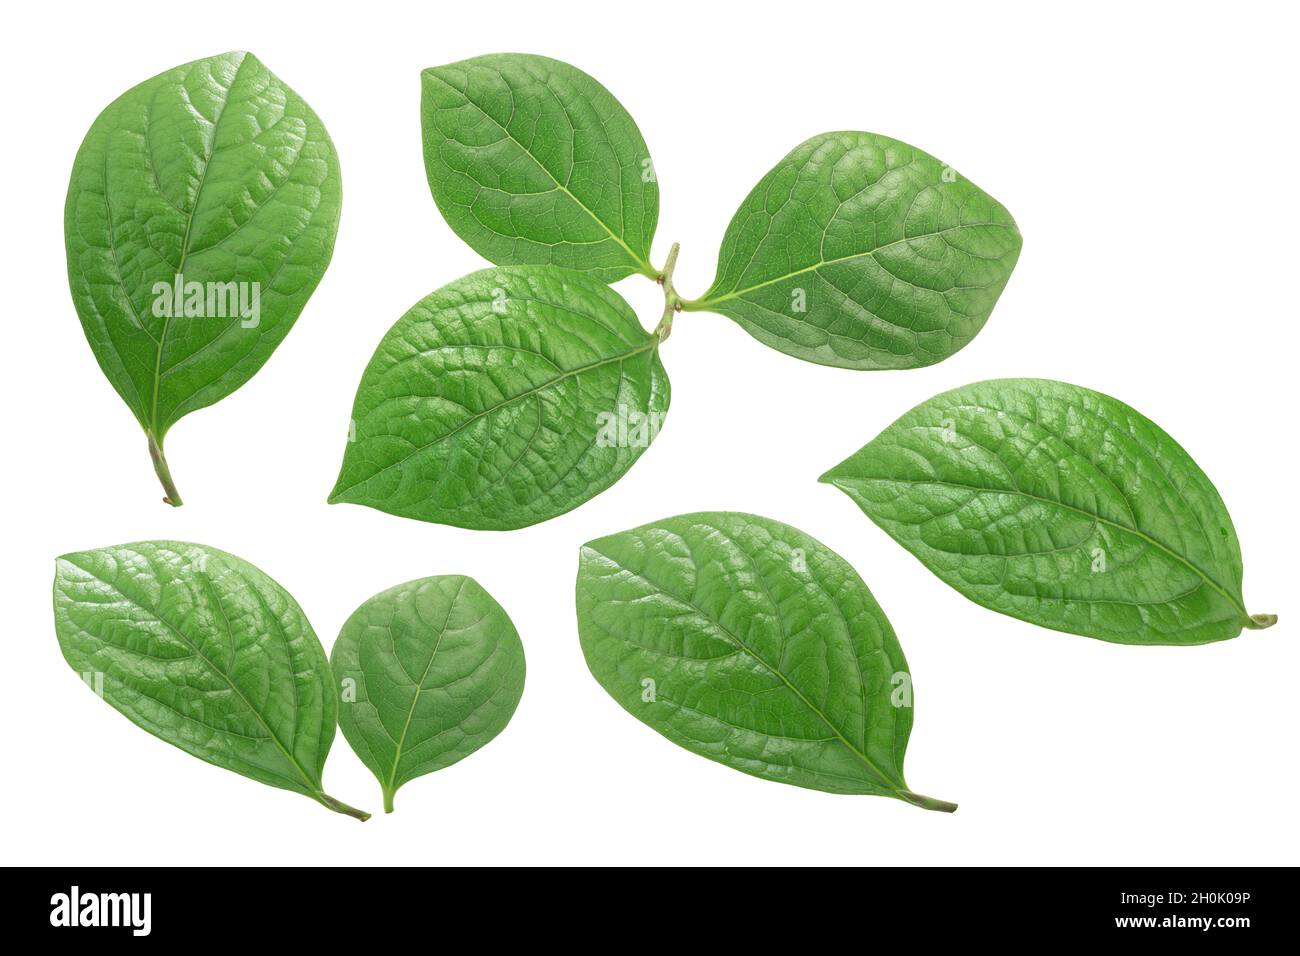 Cocoa leaves (Theobroma cacao foliage) isolated Stock Photo